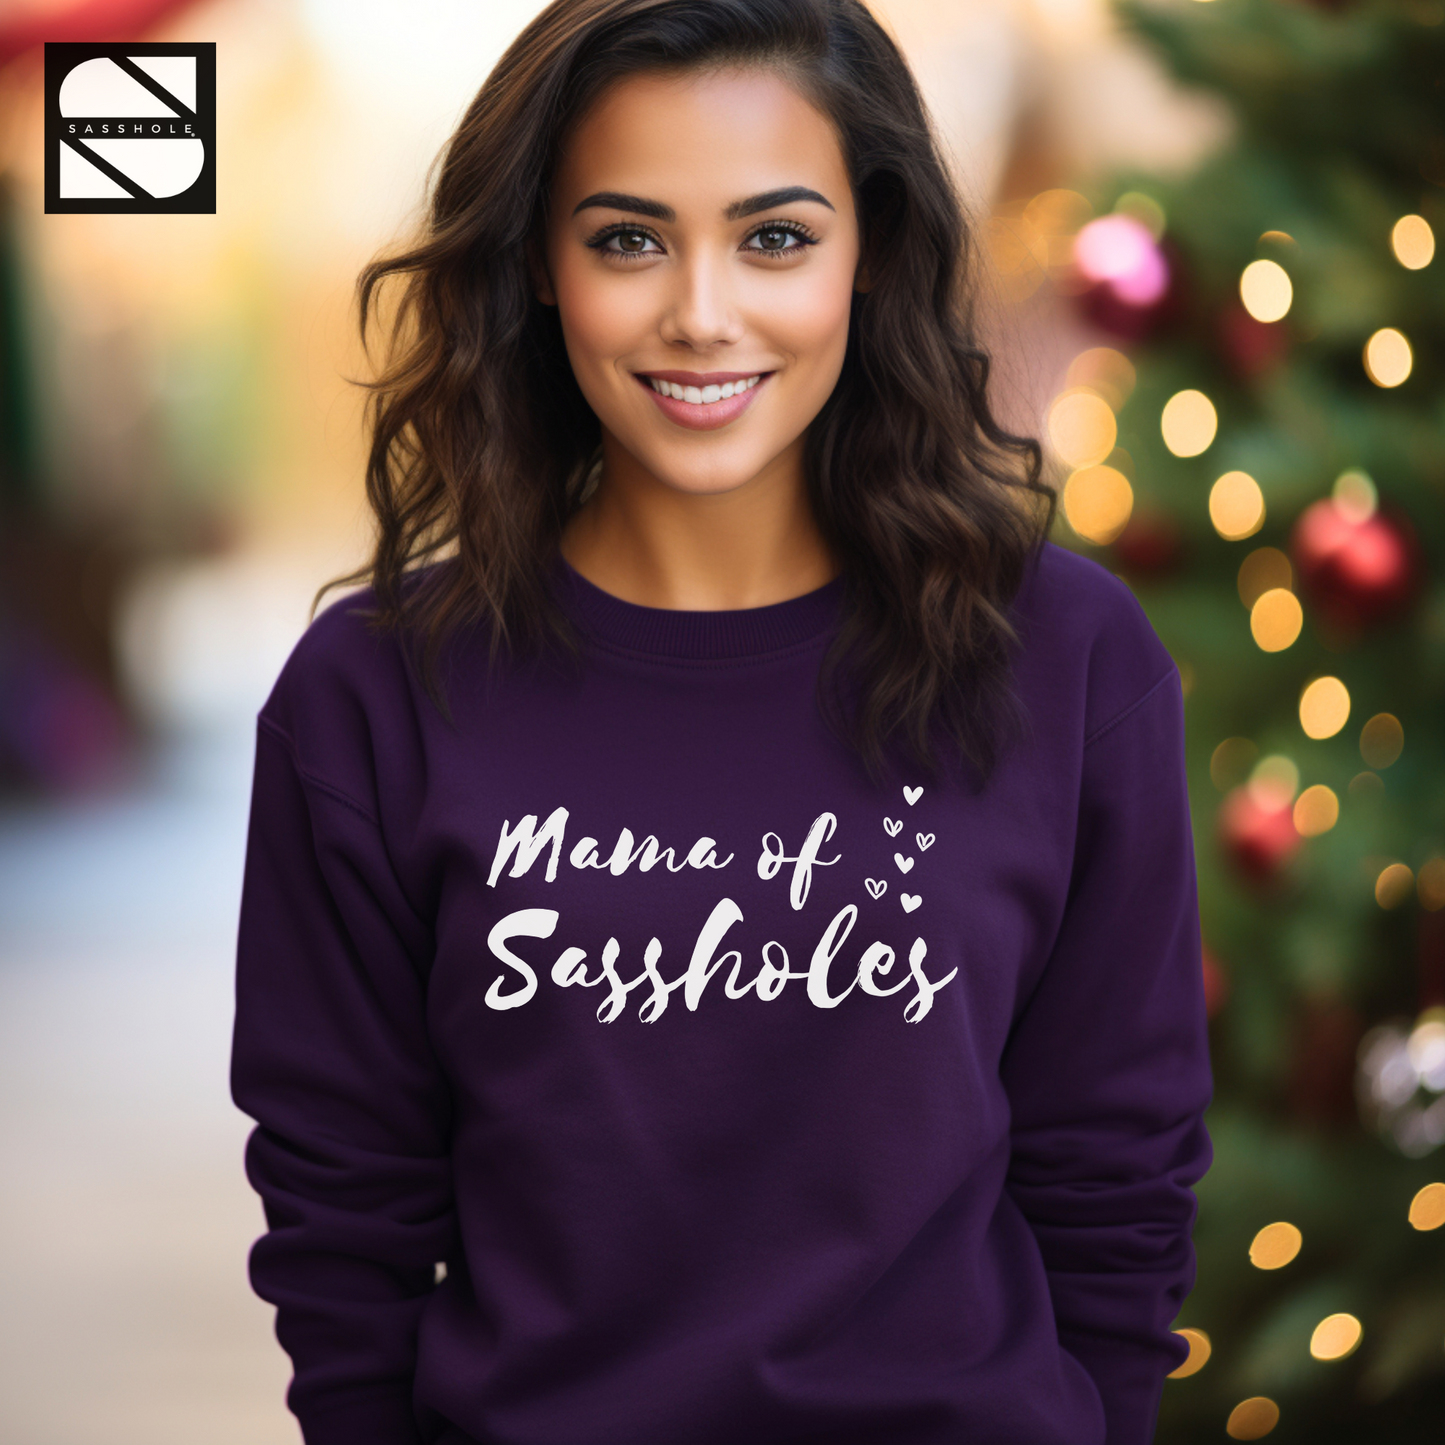 women's funny purple sweatshirt